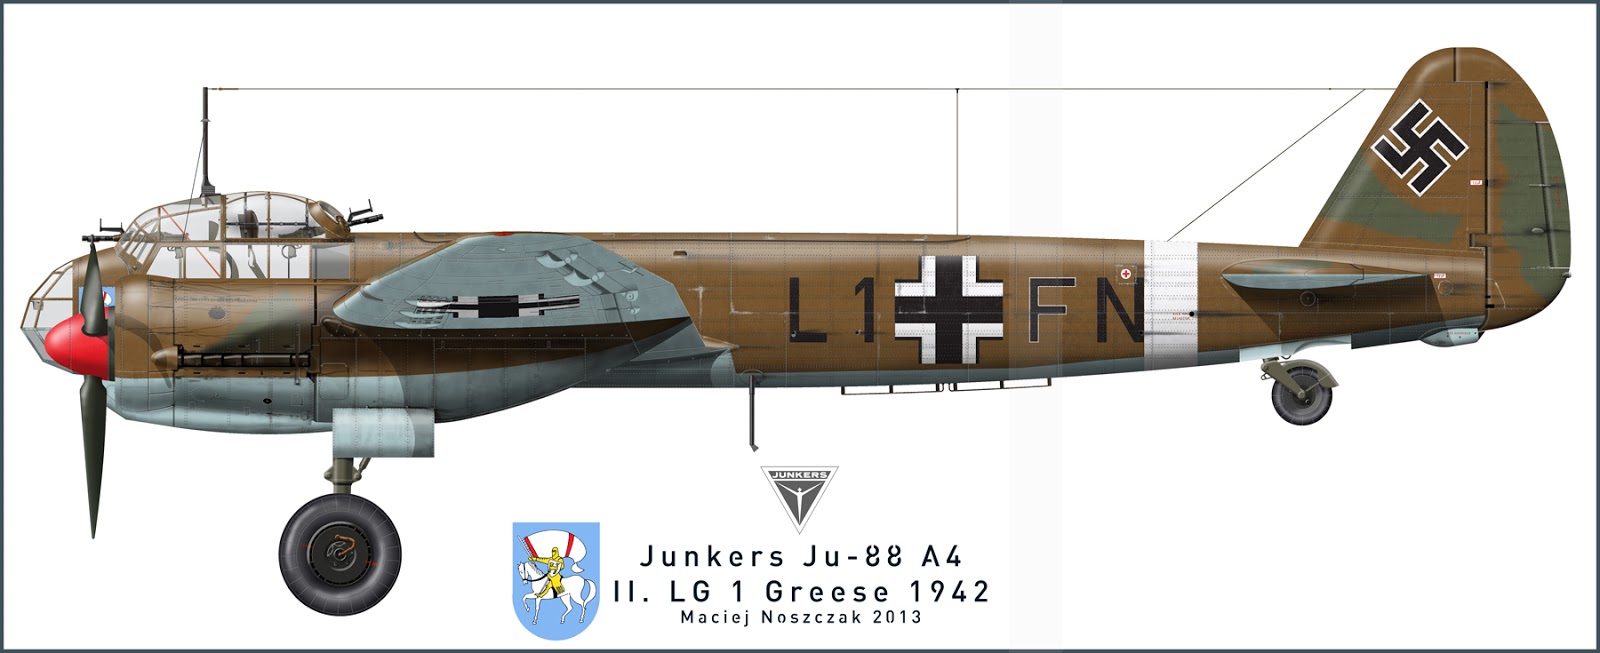 Ju_88_A4_L1FN_lb_zpseef9660b.jpg